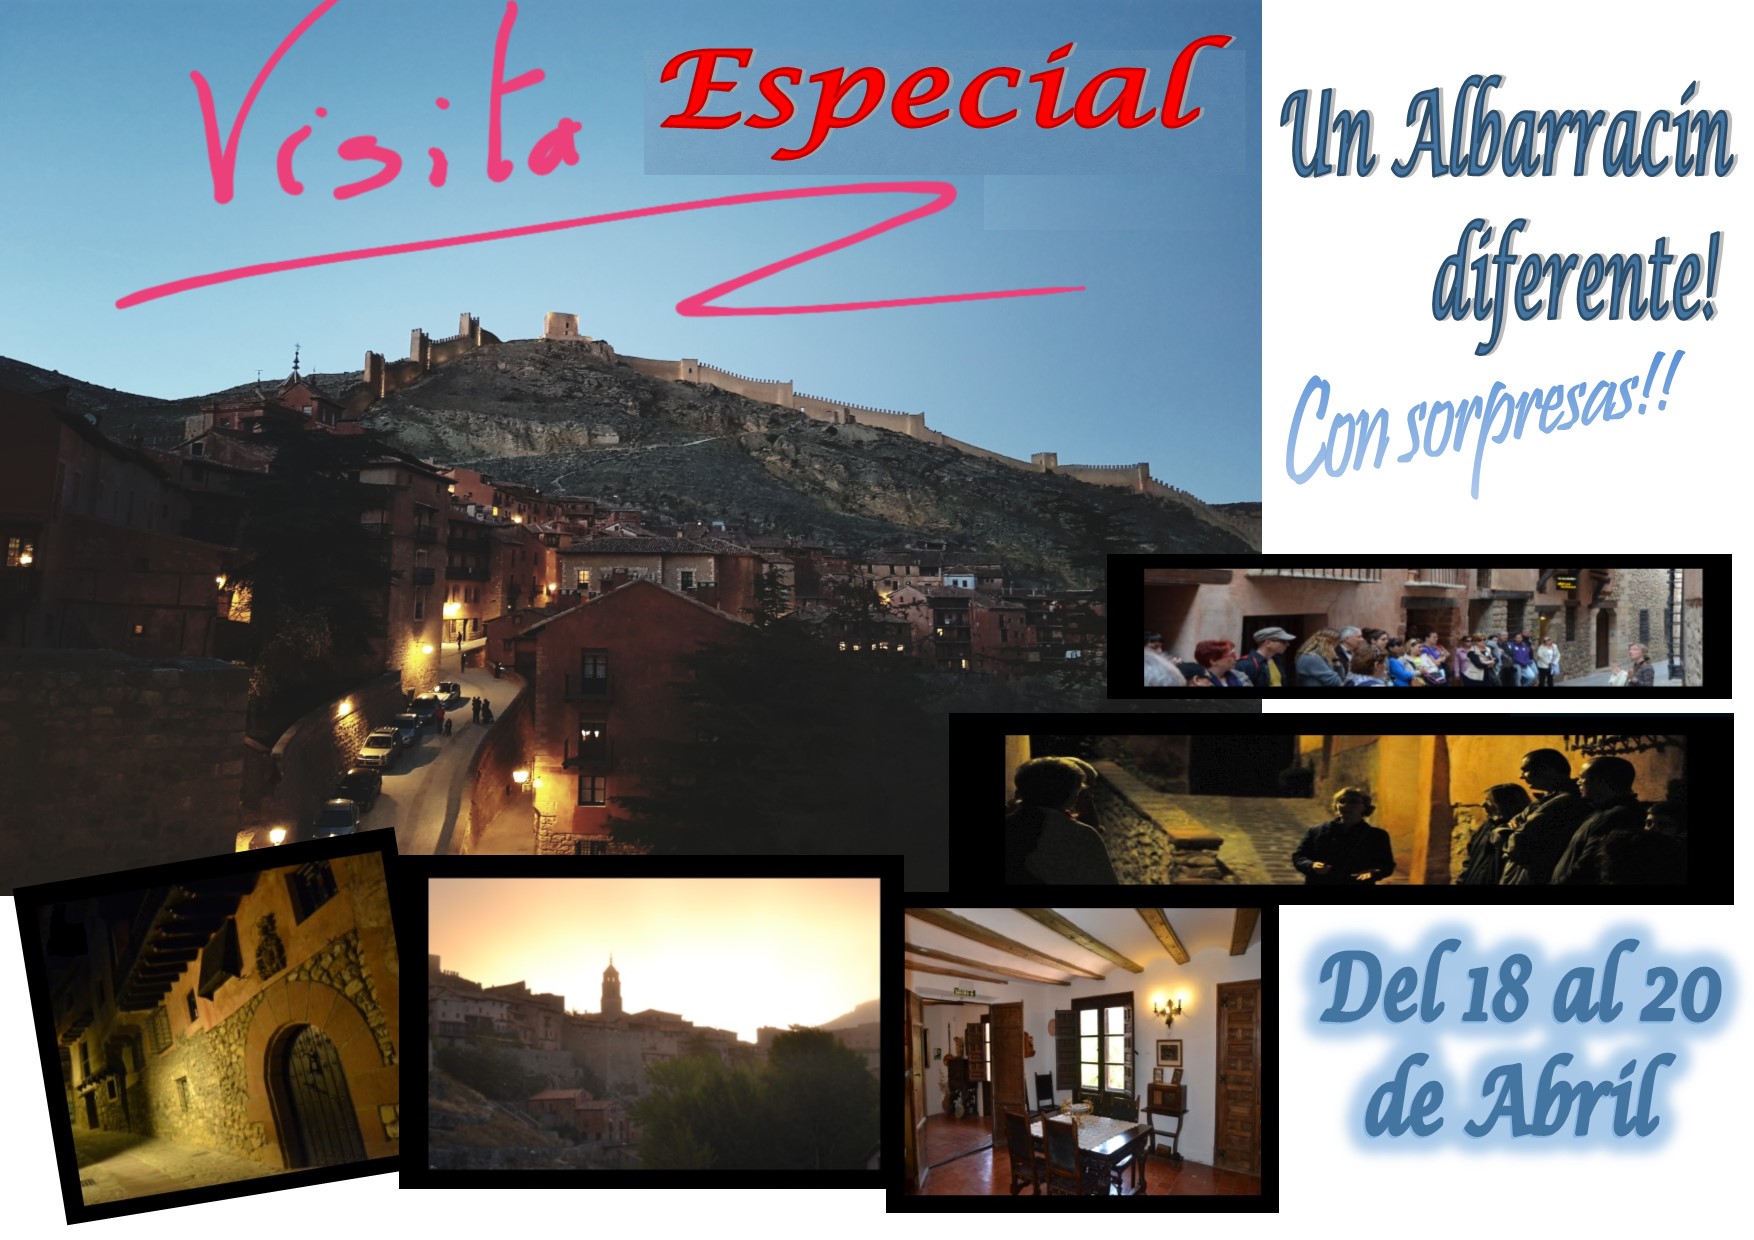 Esta Semana Santa…Albarracín Especial…y con sorpresas!! Consulte disponibilidad!